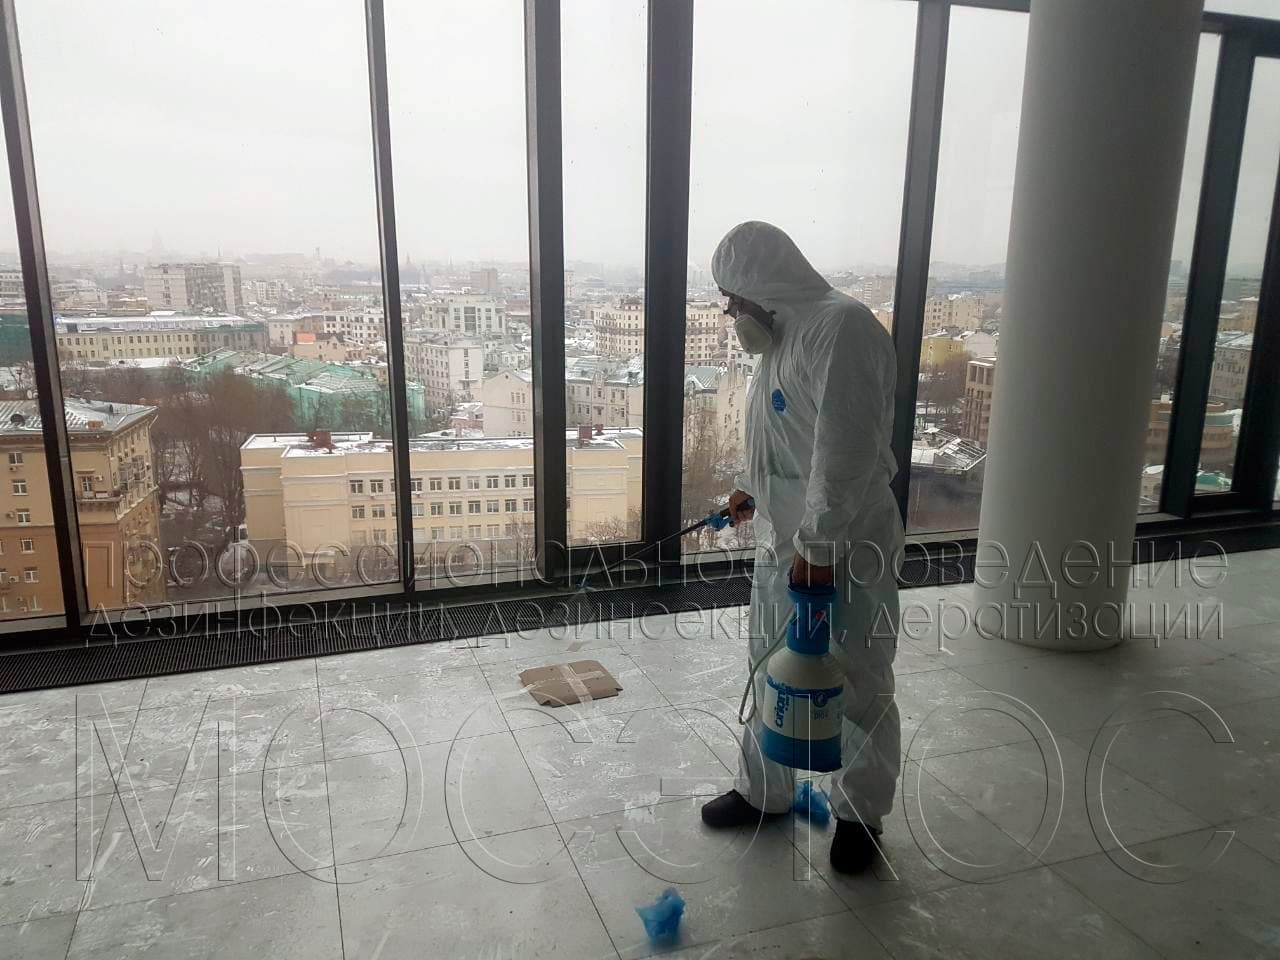 Пест-контроль (Pest Control) в Солнечногорске